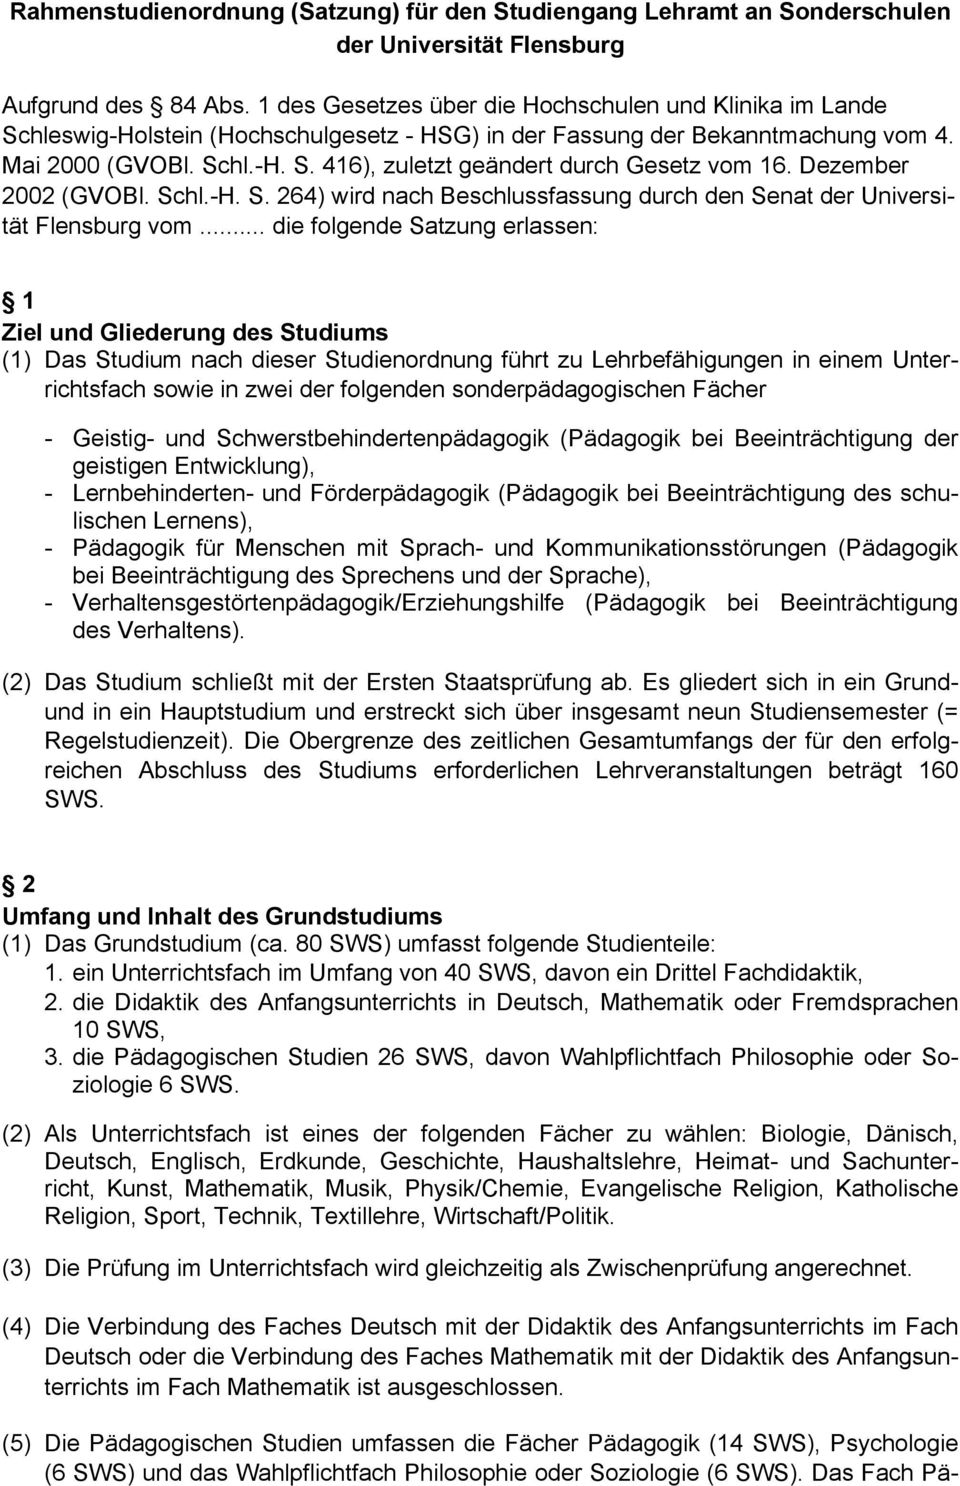 Dezember 2002 (GVOBl. Schl.-H. S. 264) wird nach Beschlussfassung durch den Senat der Universität Flensburg vom.